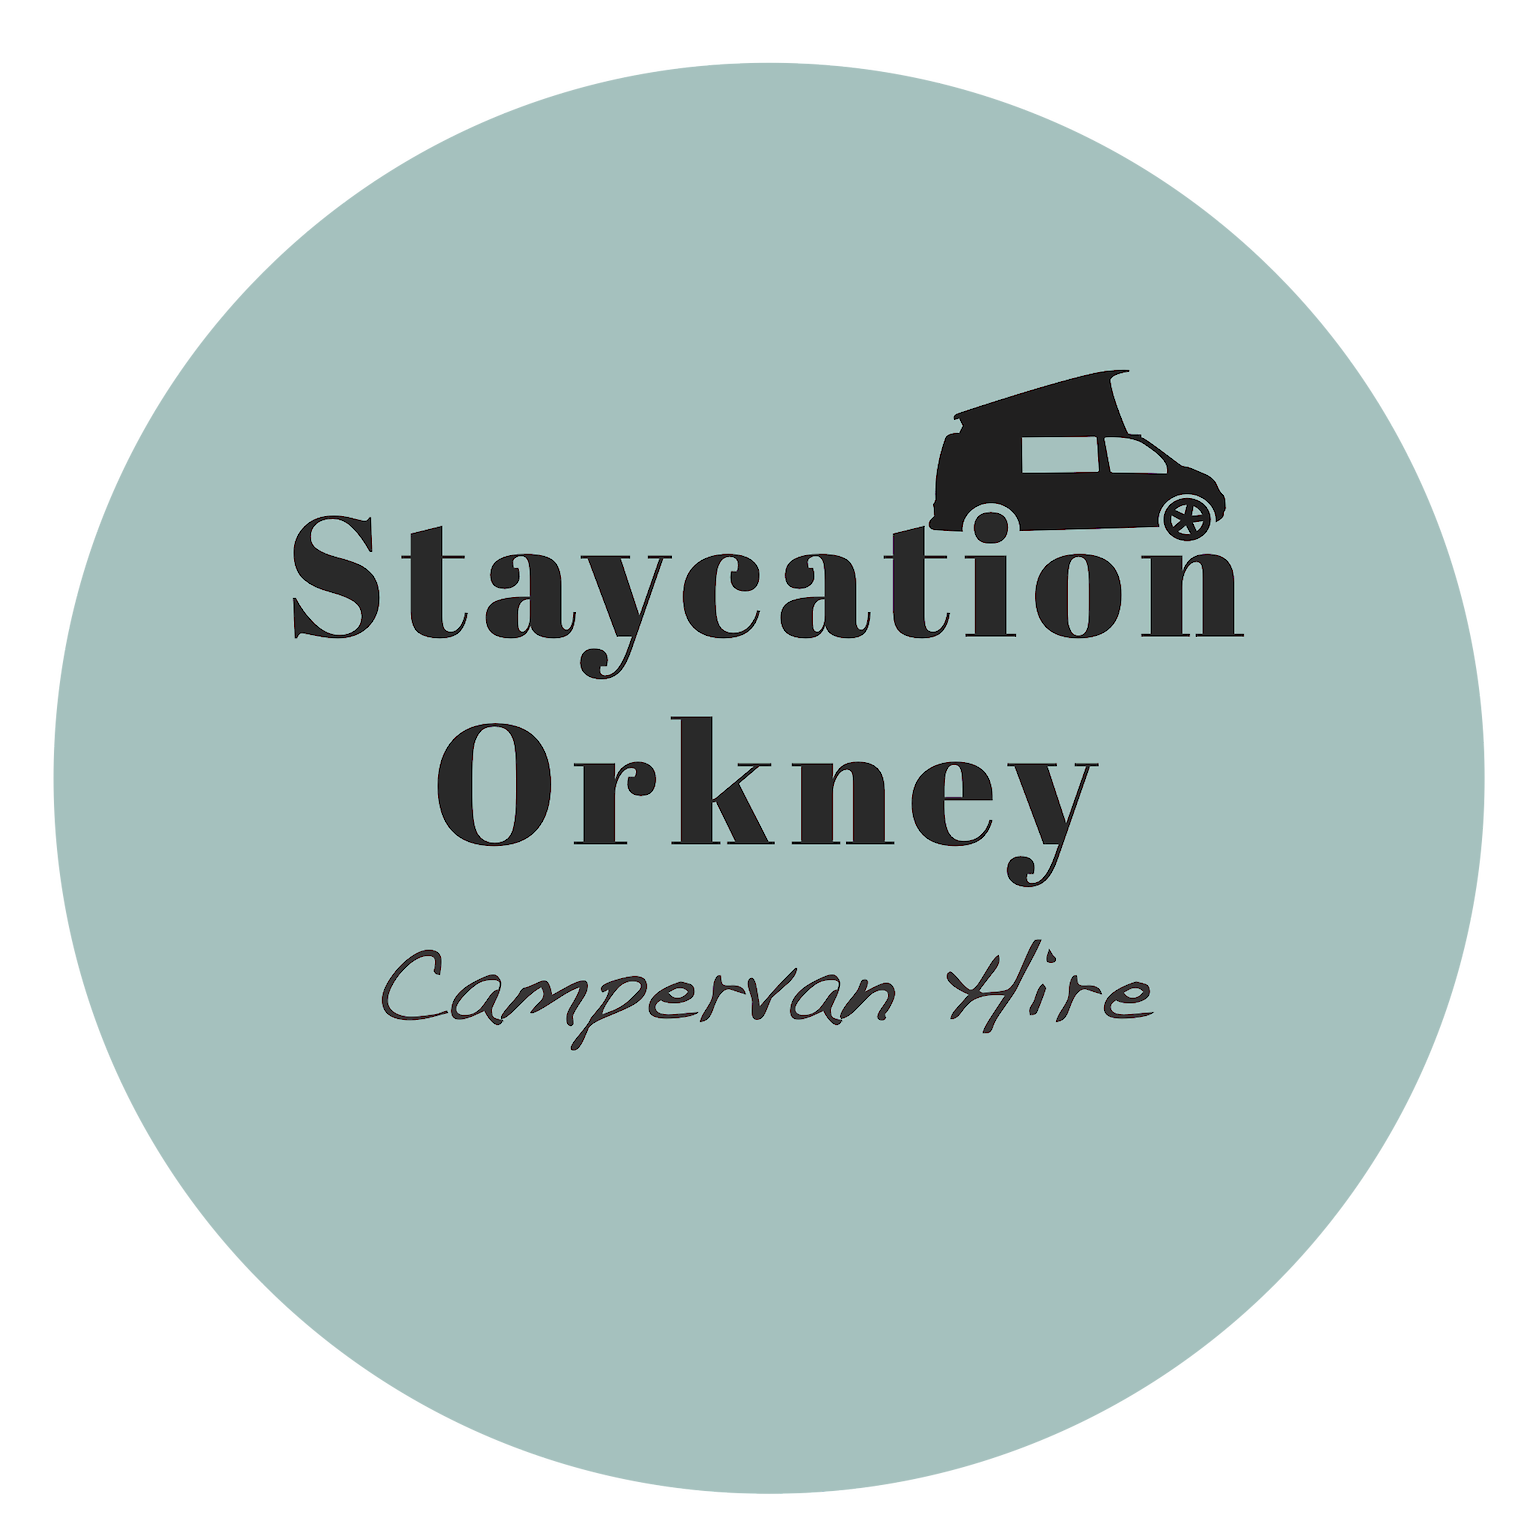 Staycation Scotland Orkney Logo